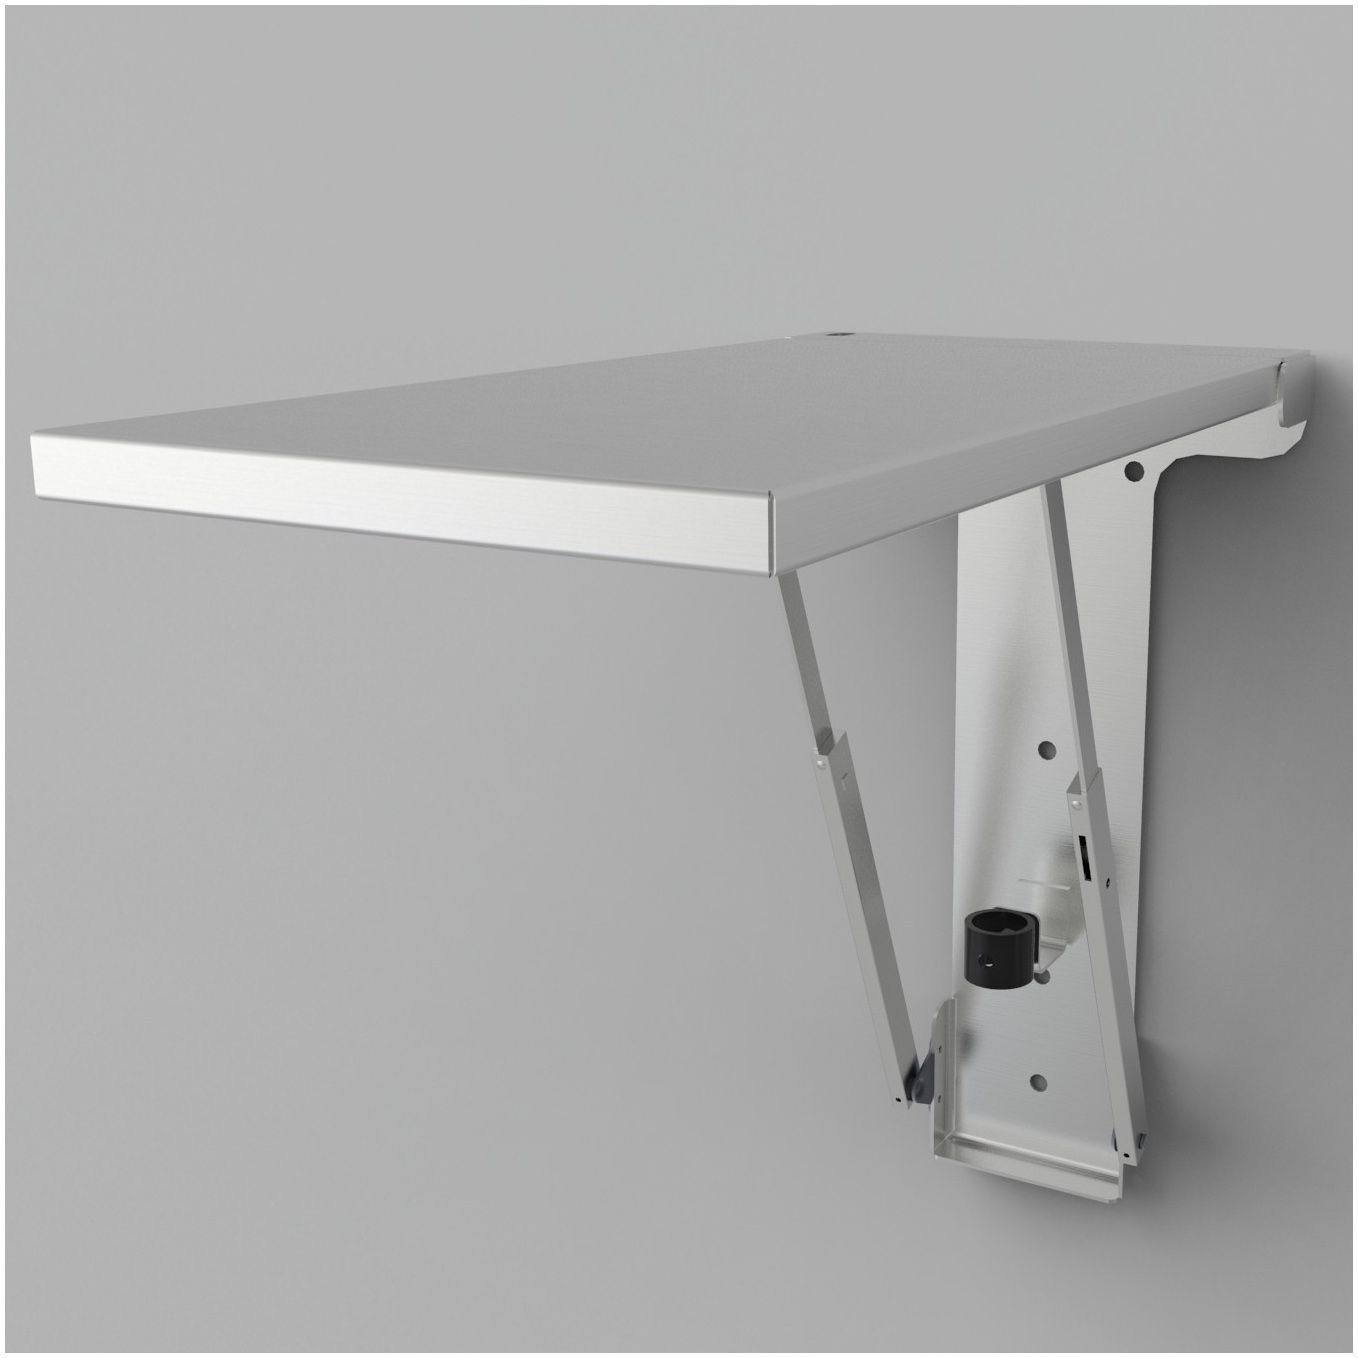 Купить складную полку. Кронштейн складной Протей 600. Откидной механизм для стола Desk (411/78.0005.02). Unico Metall откидной стол. Стол икеа подъемный механизм.